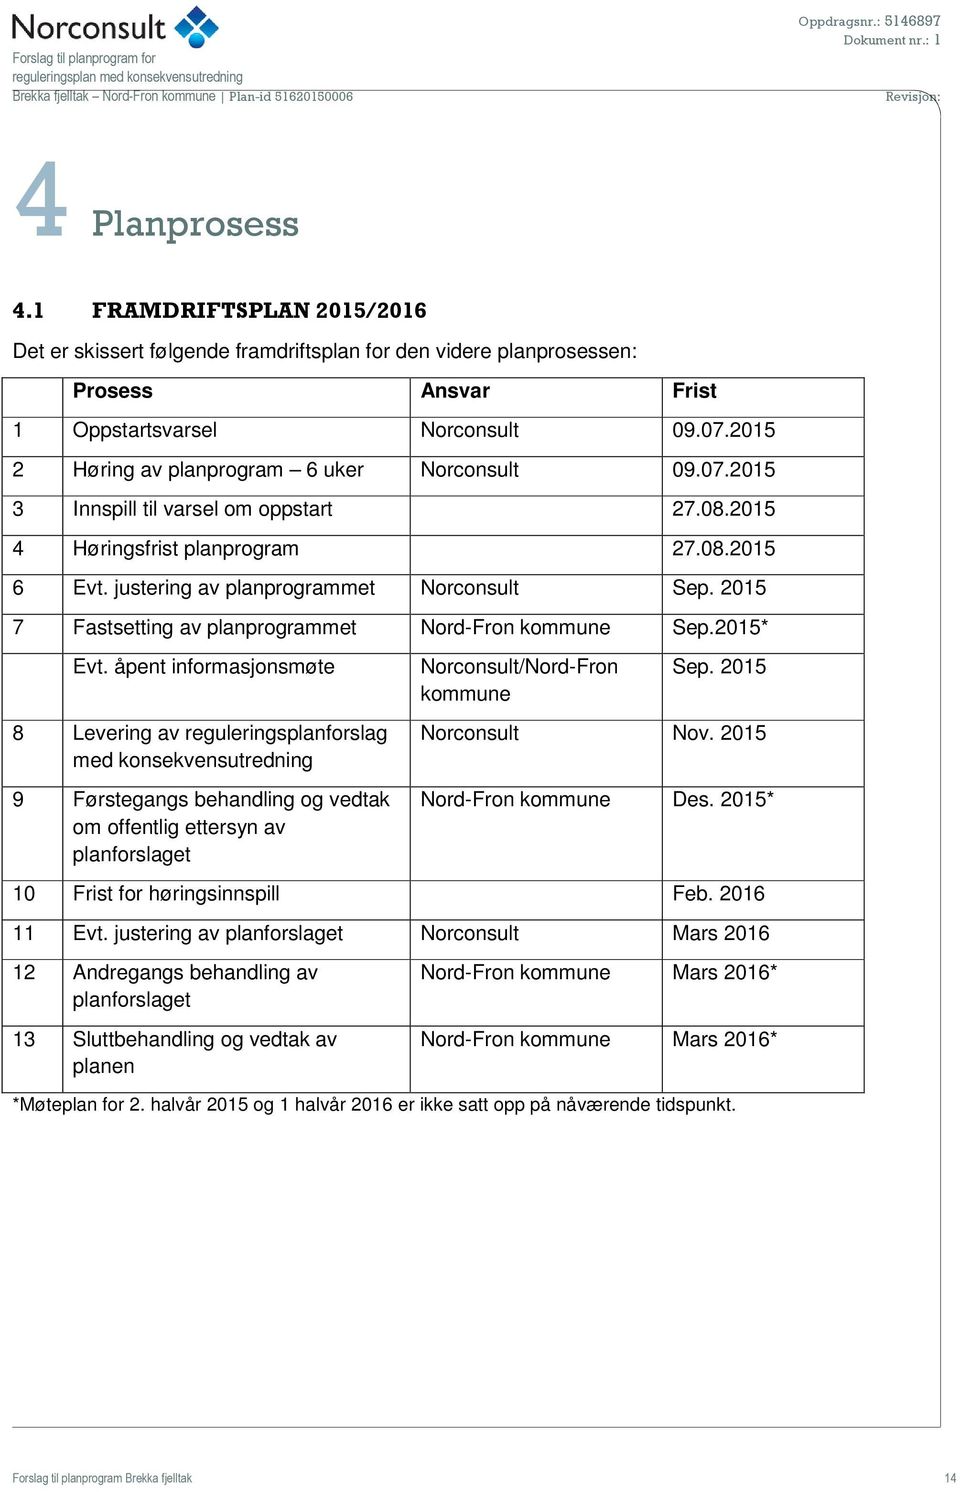 2015 7 Fastsetting av planprogrammet Nord-Fron kommune Sep.2015* Evt.